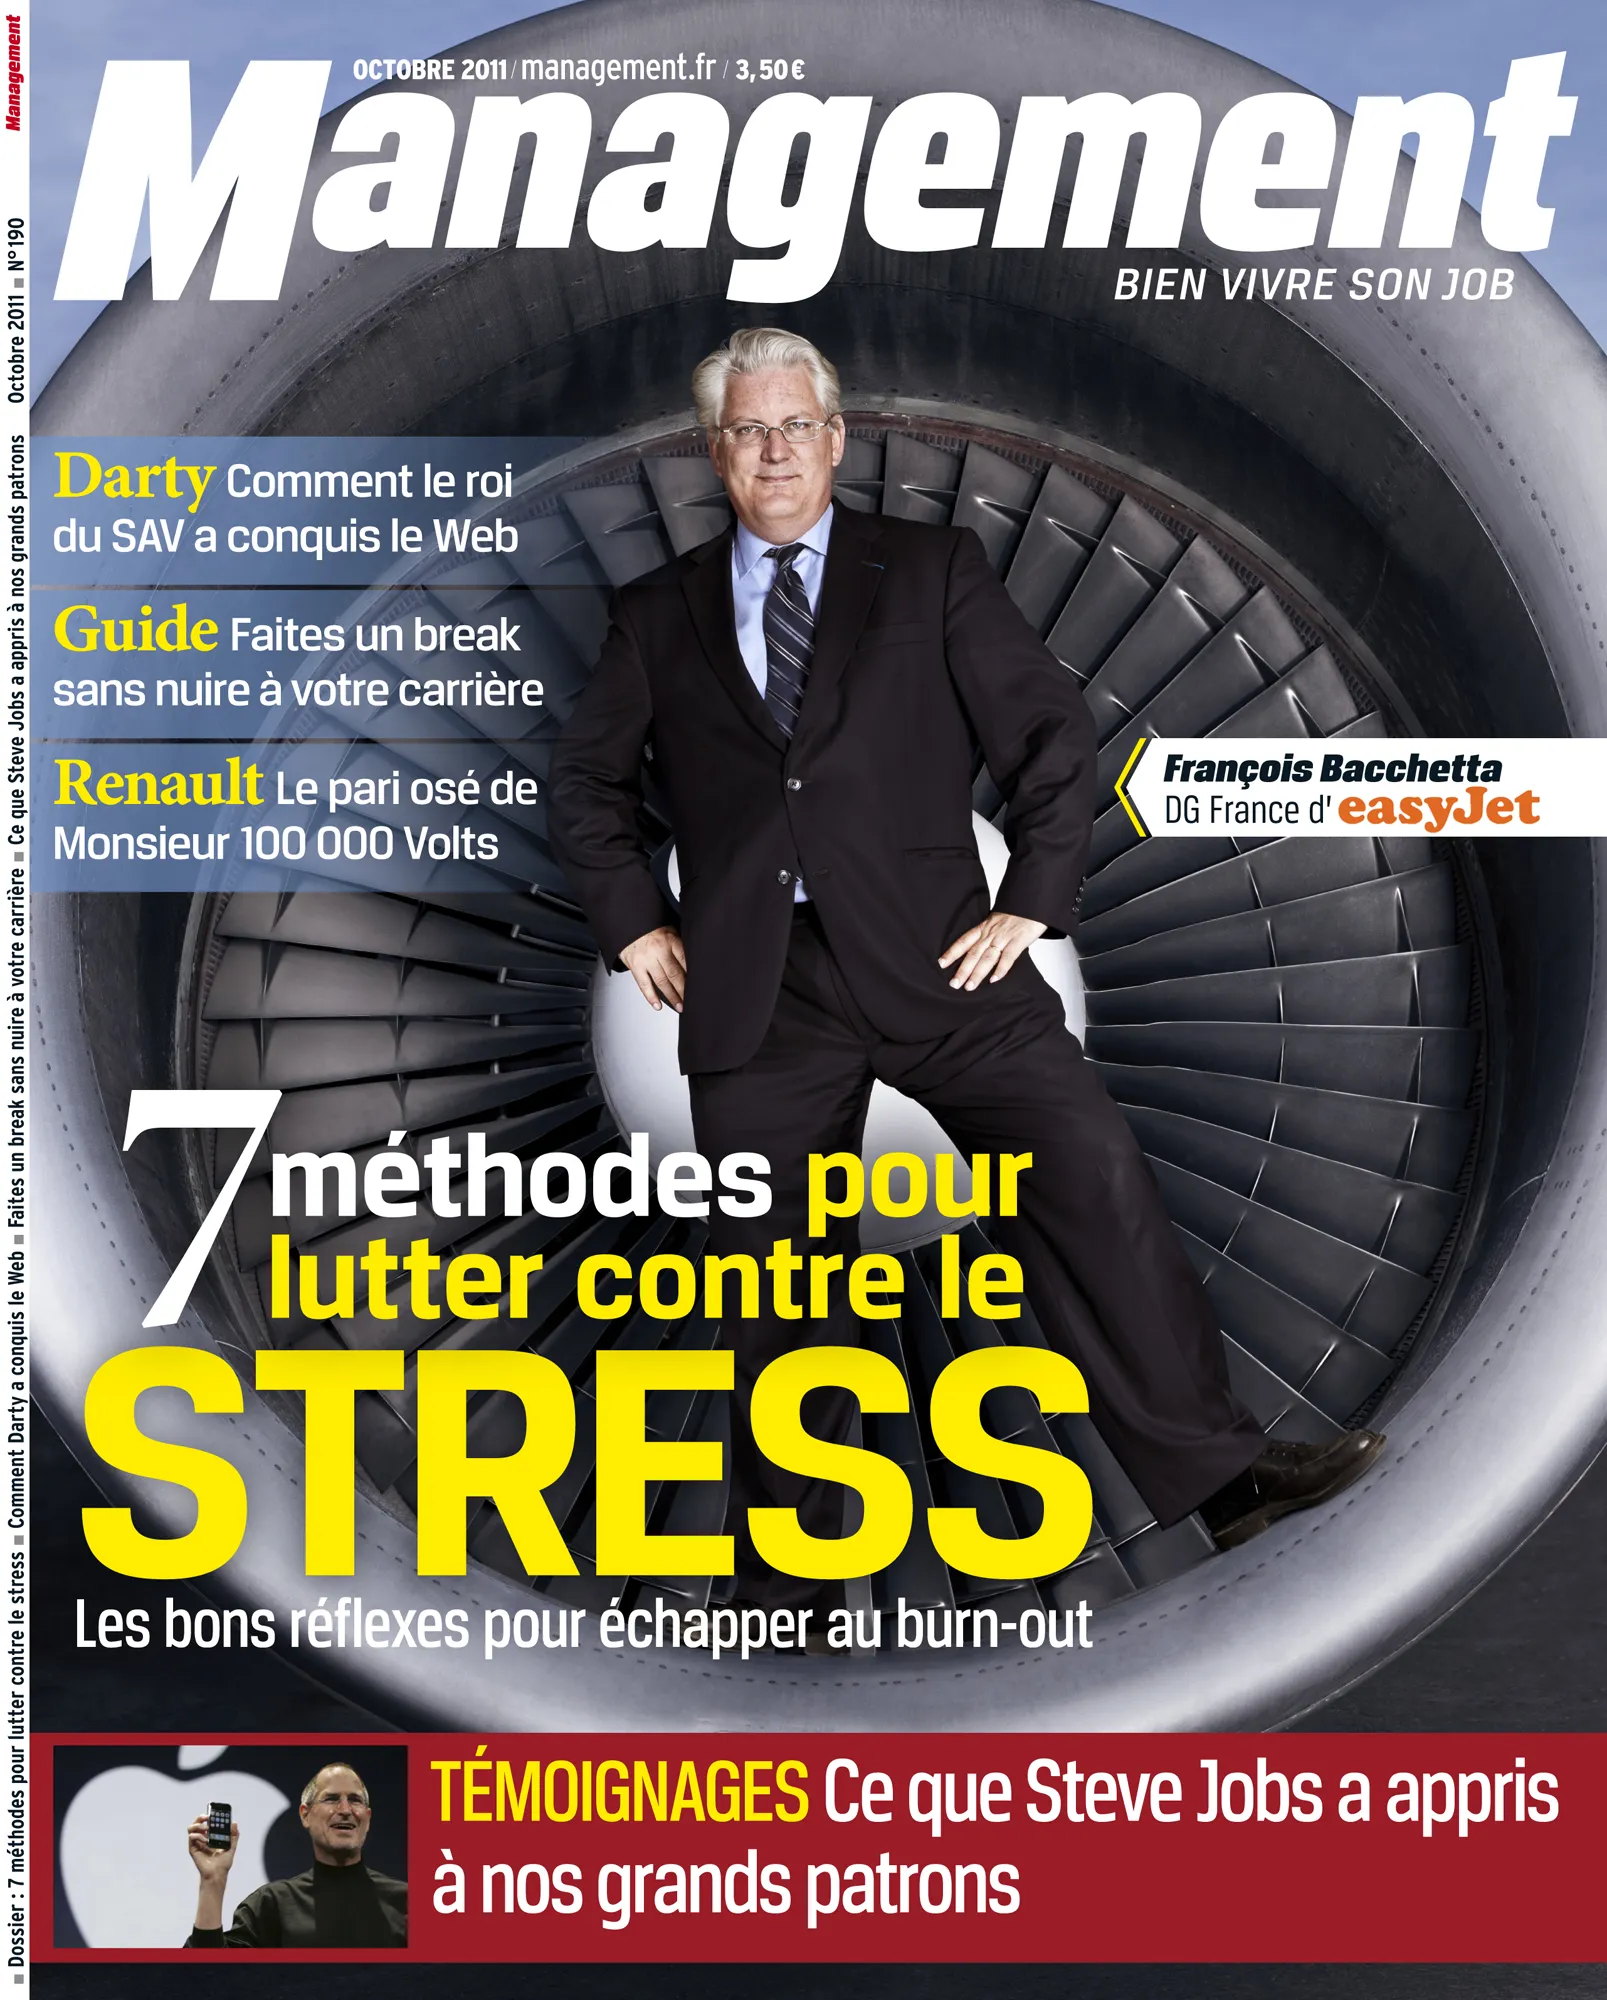 François Bacchetta - PDG Easyjet France - Management